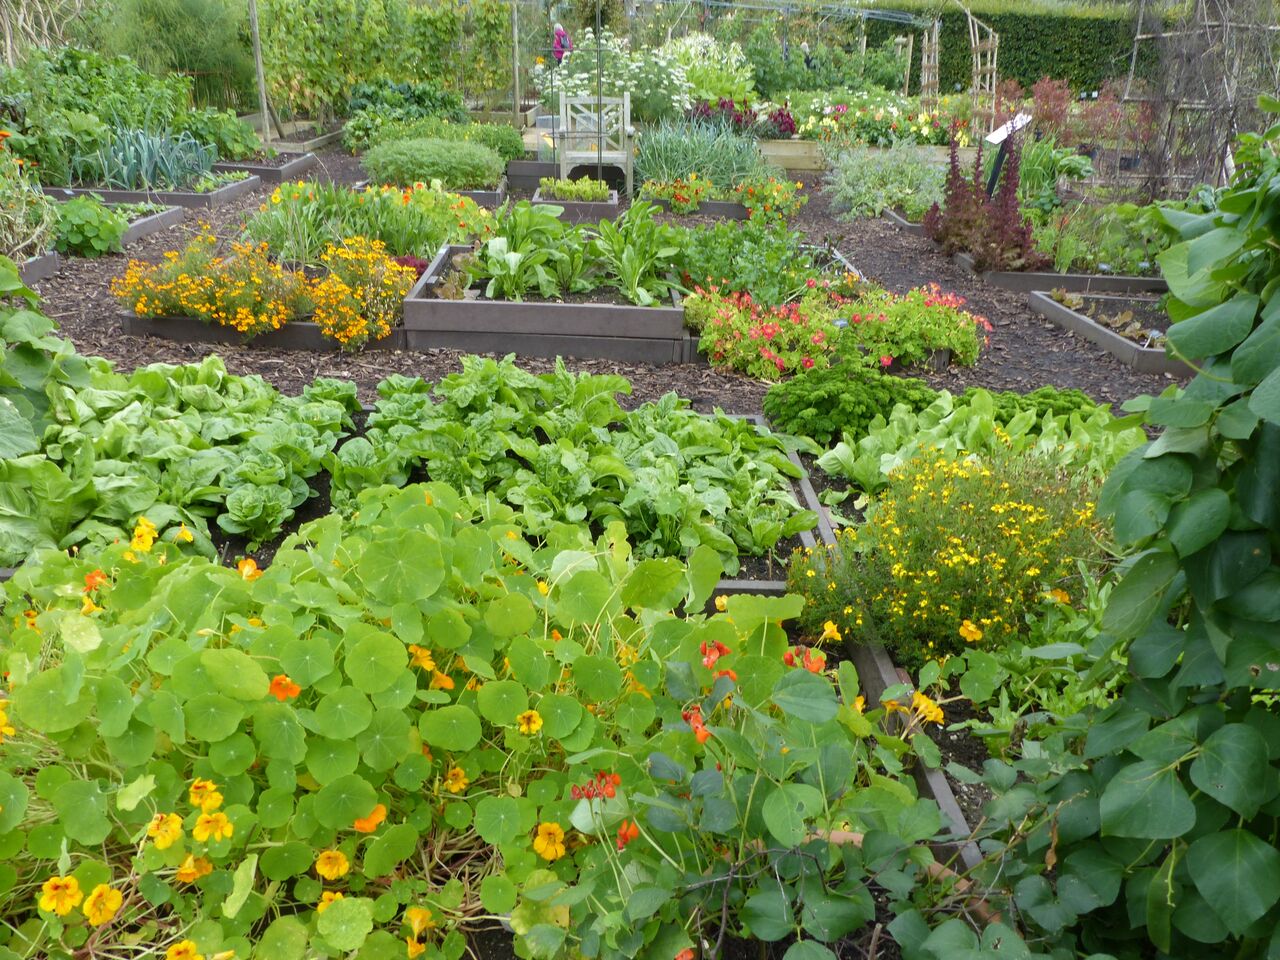 Your Vegetable Garden Tips